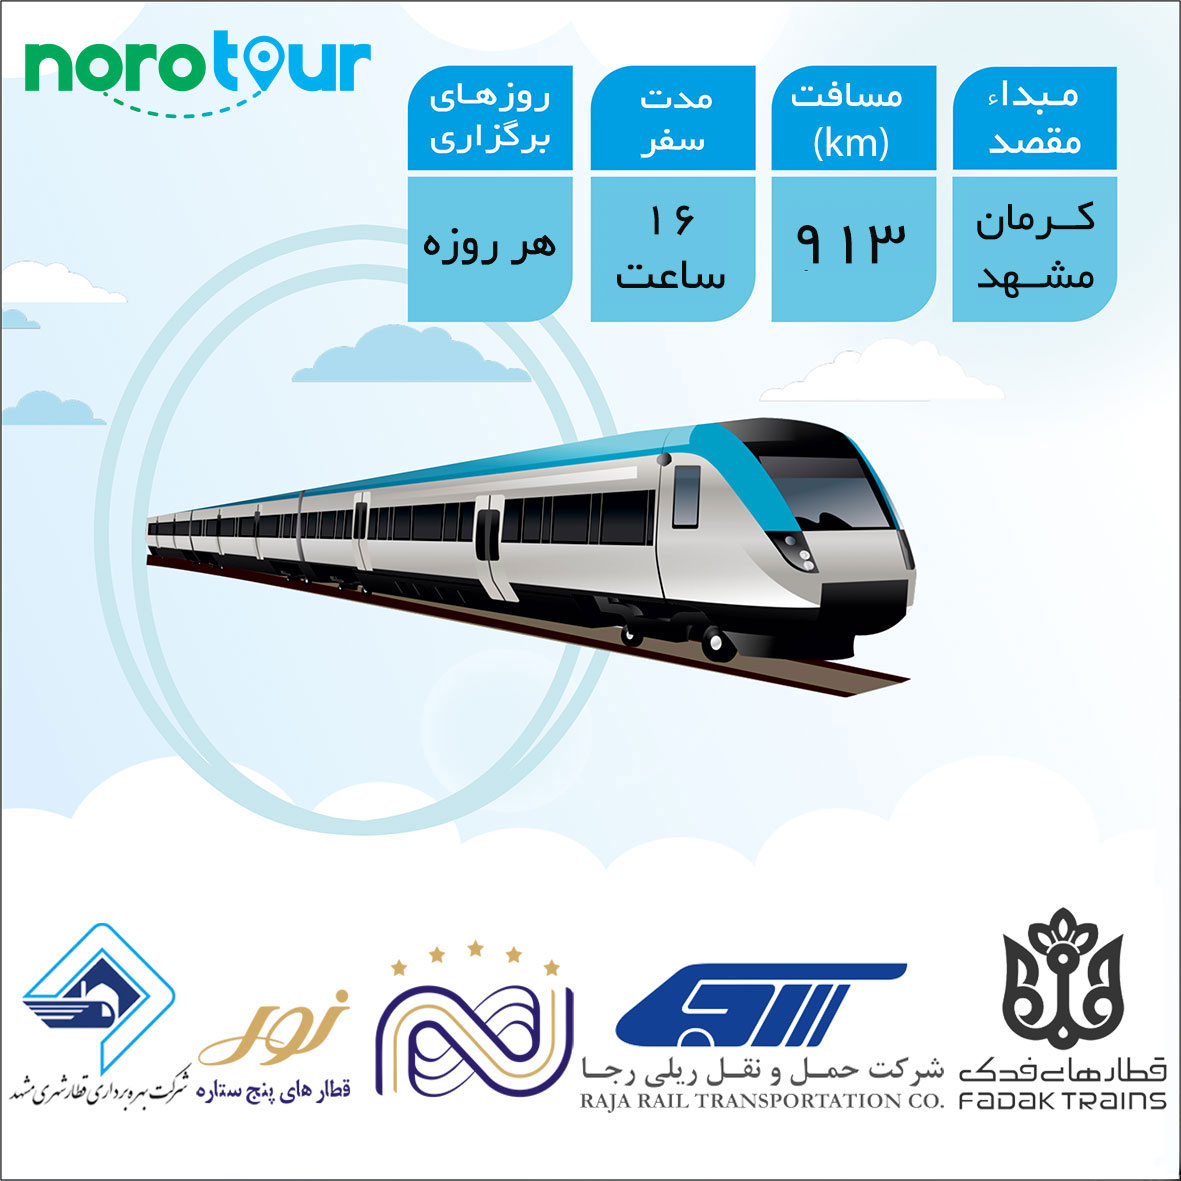 تور مشهد از کرمان با قطار | نورو تور